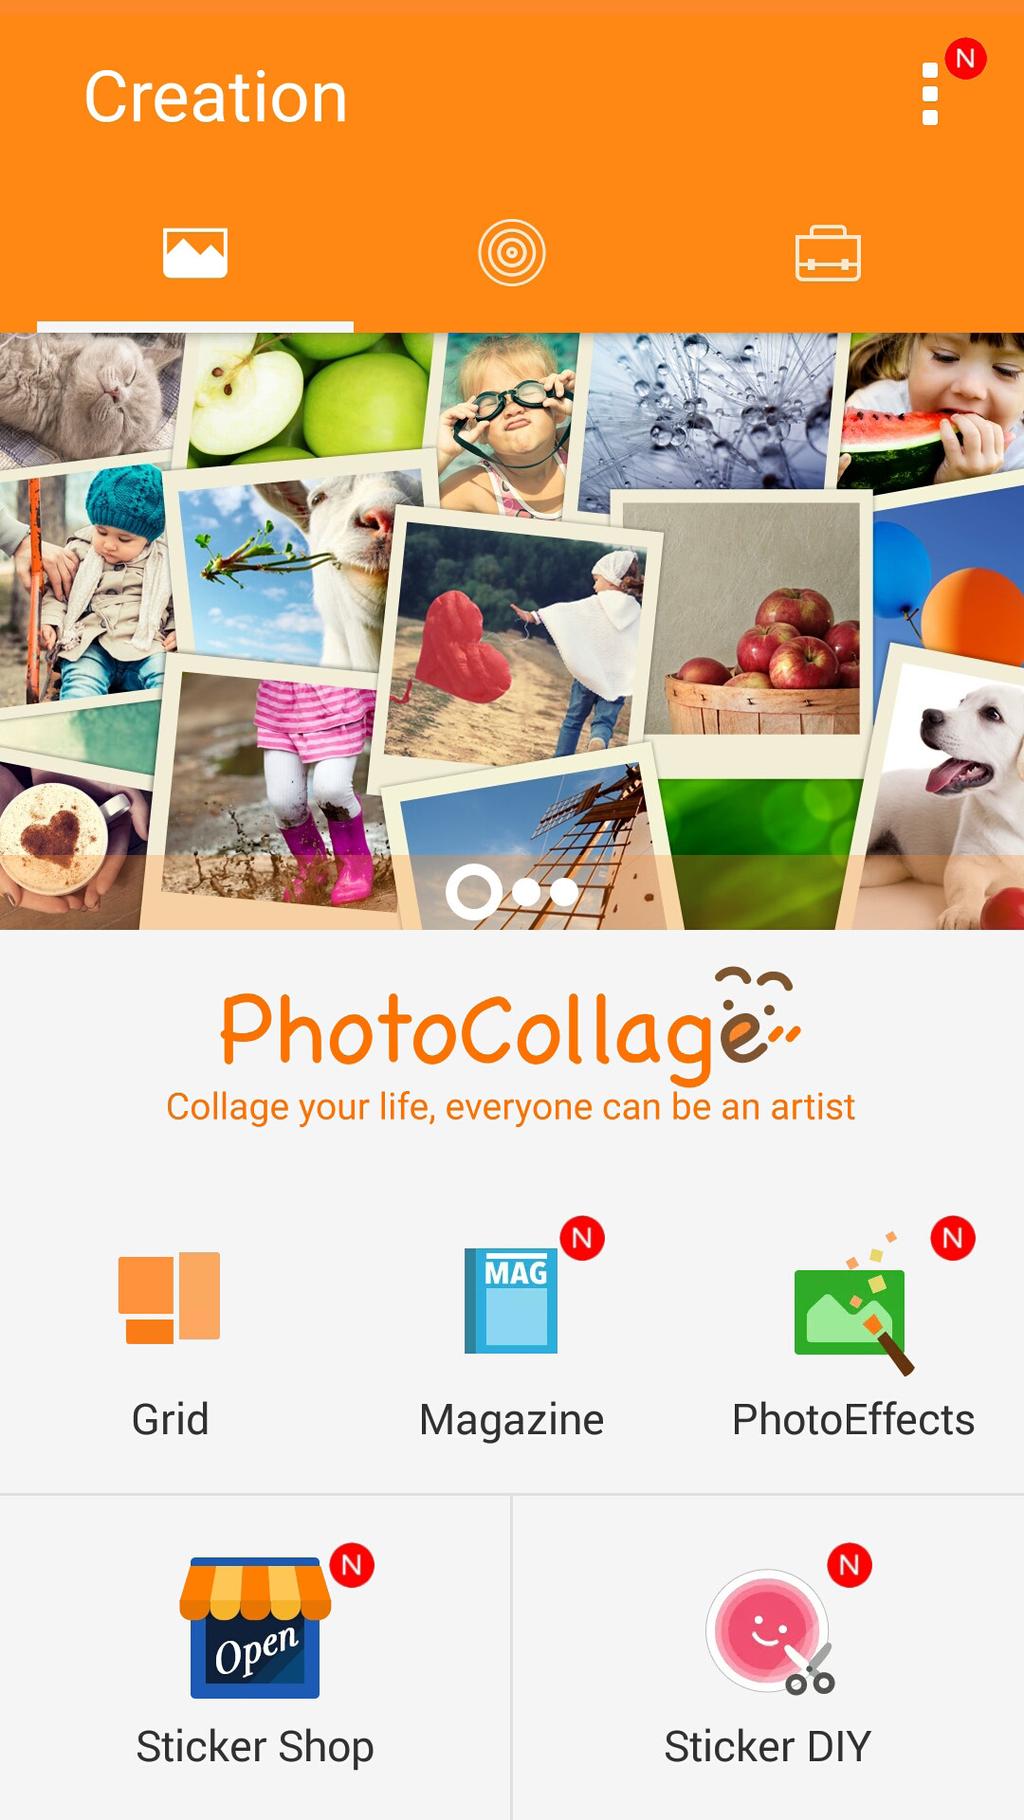 PhotoCollage Fotoğraf koleksiyonunuzdan bir kolaj oluşturmak için PhotoCollage uygulamasını kullanın. PhotoCollage uygulamasını başlatmak için, Ana ekranınızda PhotoCollage öğesine dokunun.